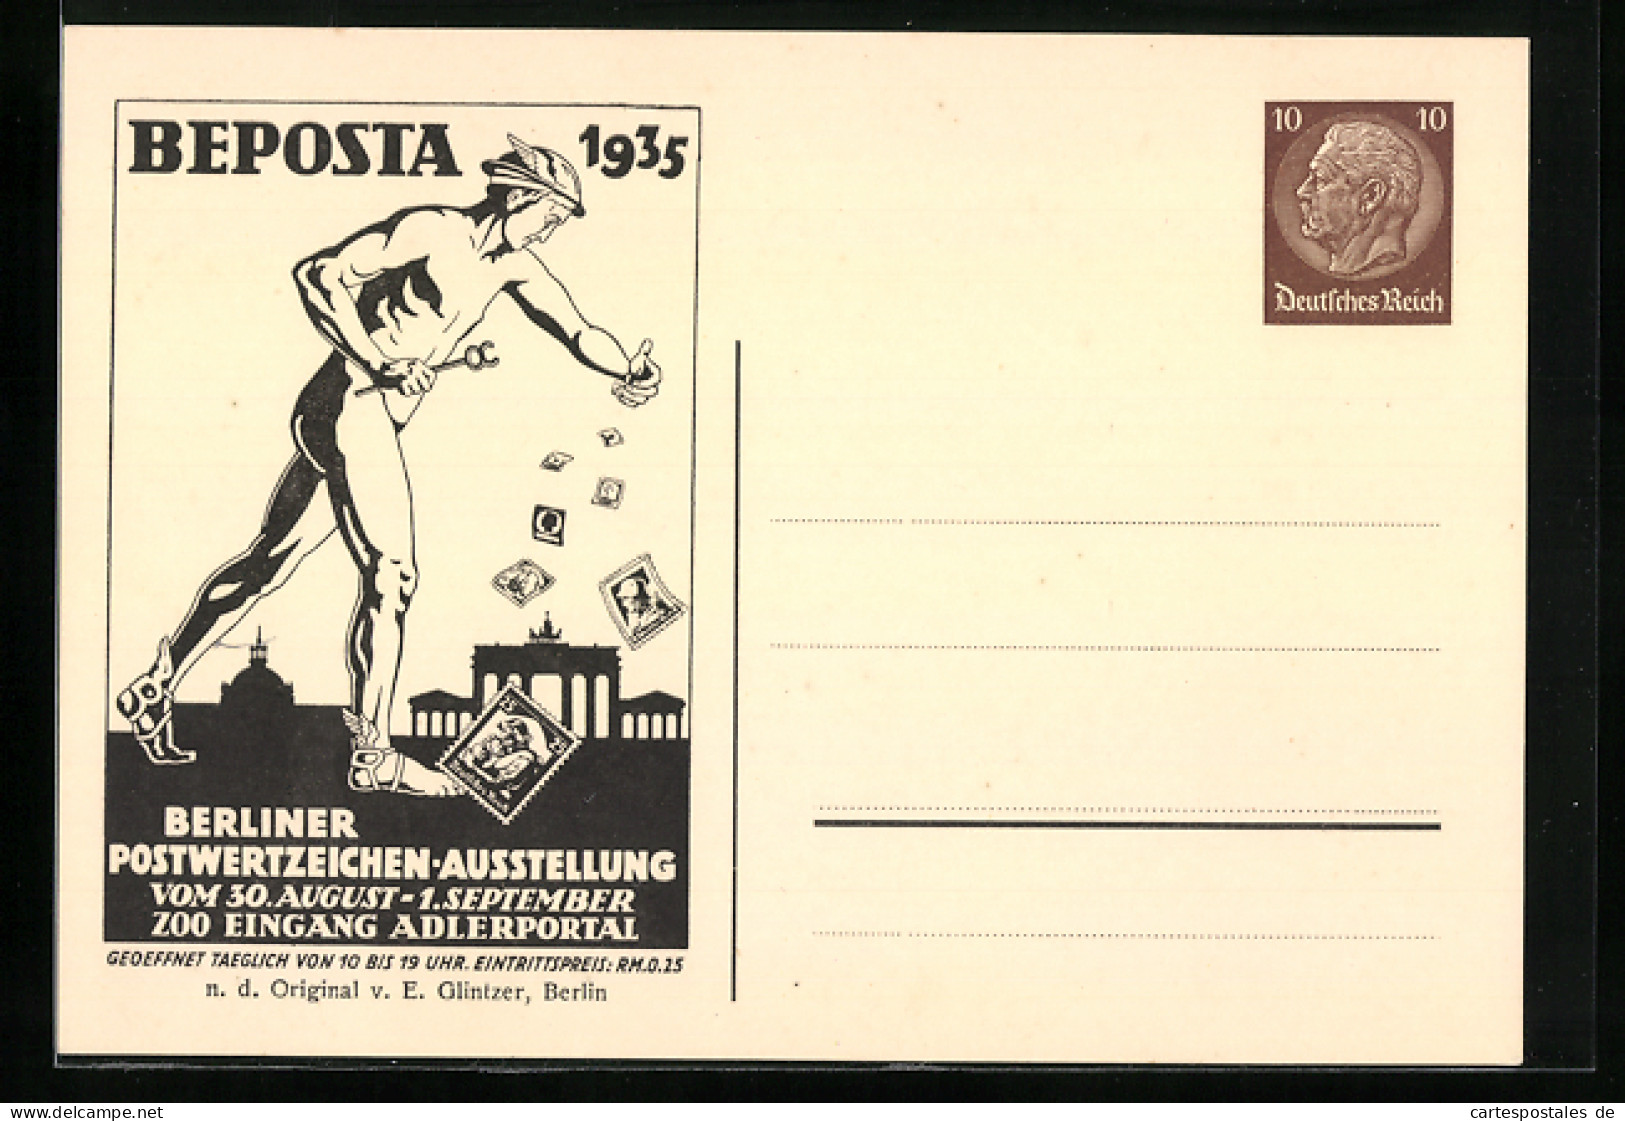 AK Berlin, Berliner Postwertzeichen-Ausstellung Beposta 1935, Ganzsache 10 Pfg.  - Cartes Postales